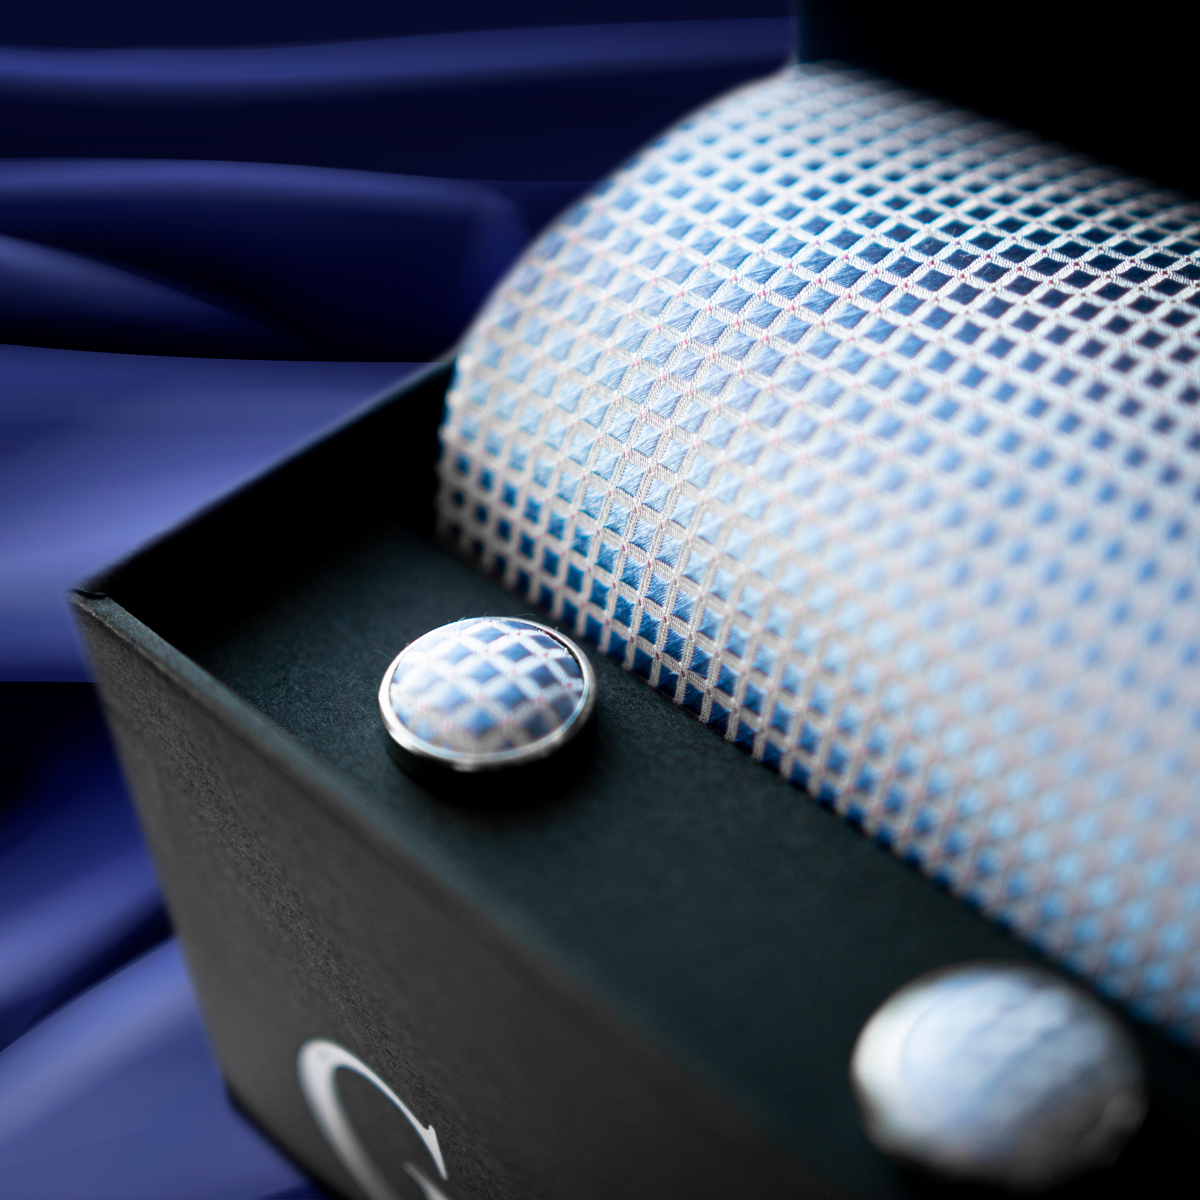 Hedvábná kravata a manžetové knoflíčky Giori Milano RS0803, modré